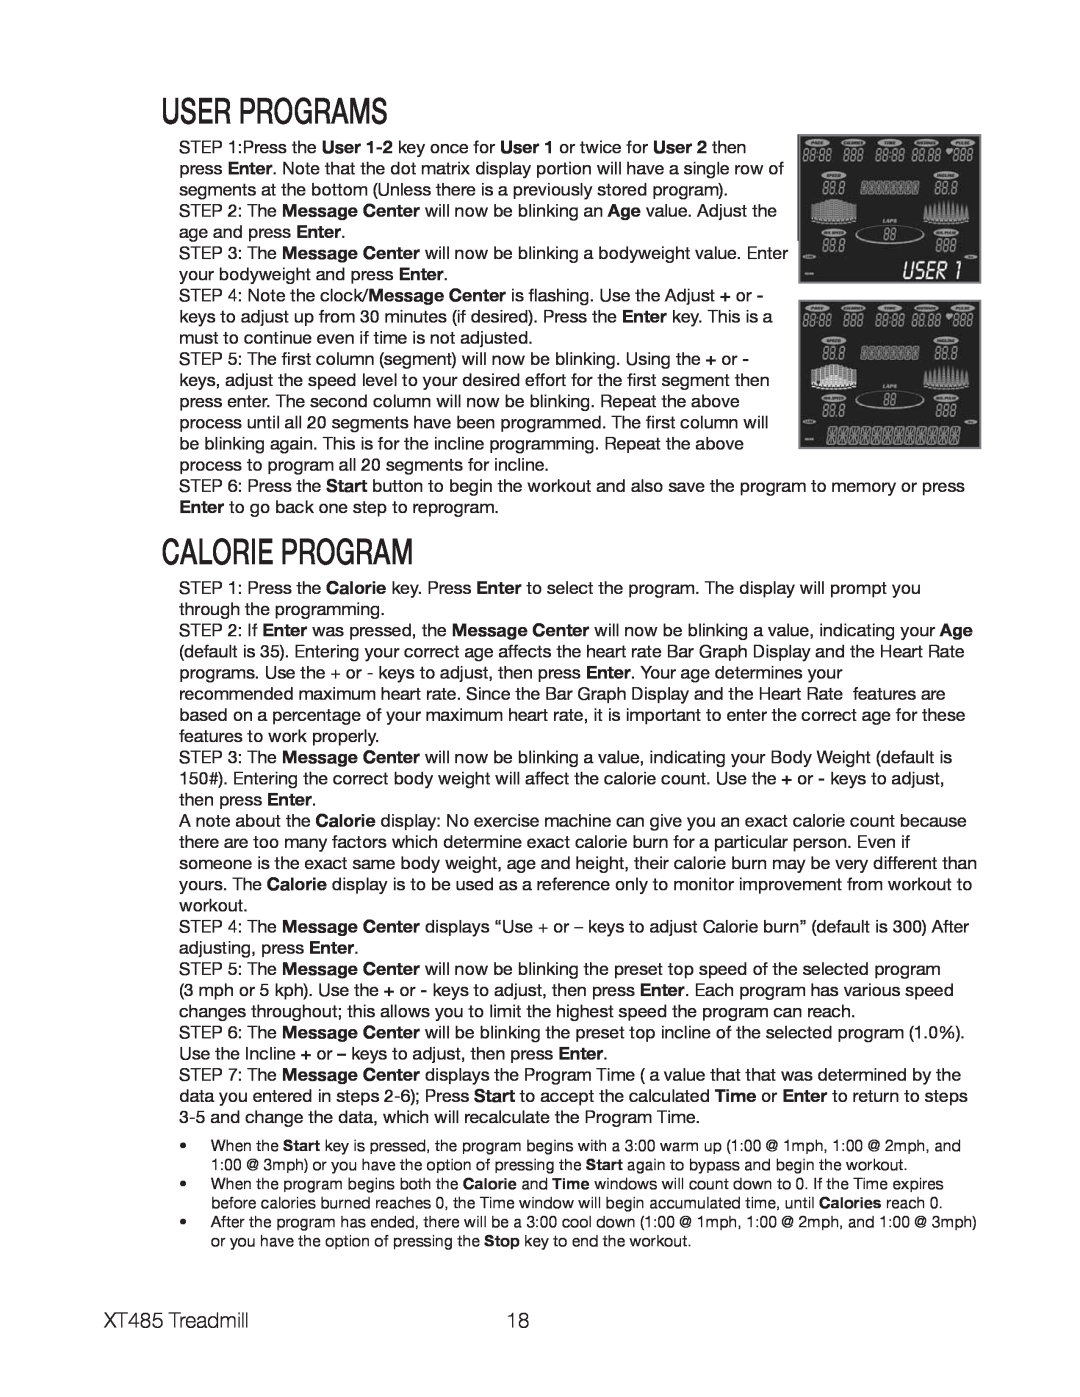 Spirit XT485 owner manual User Programs, Calorie Program 